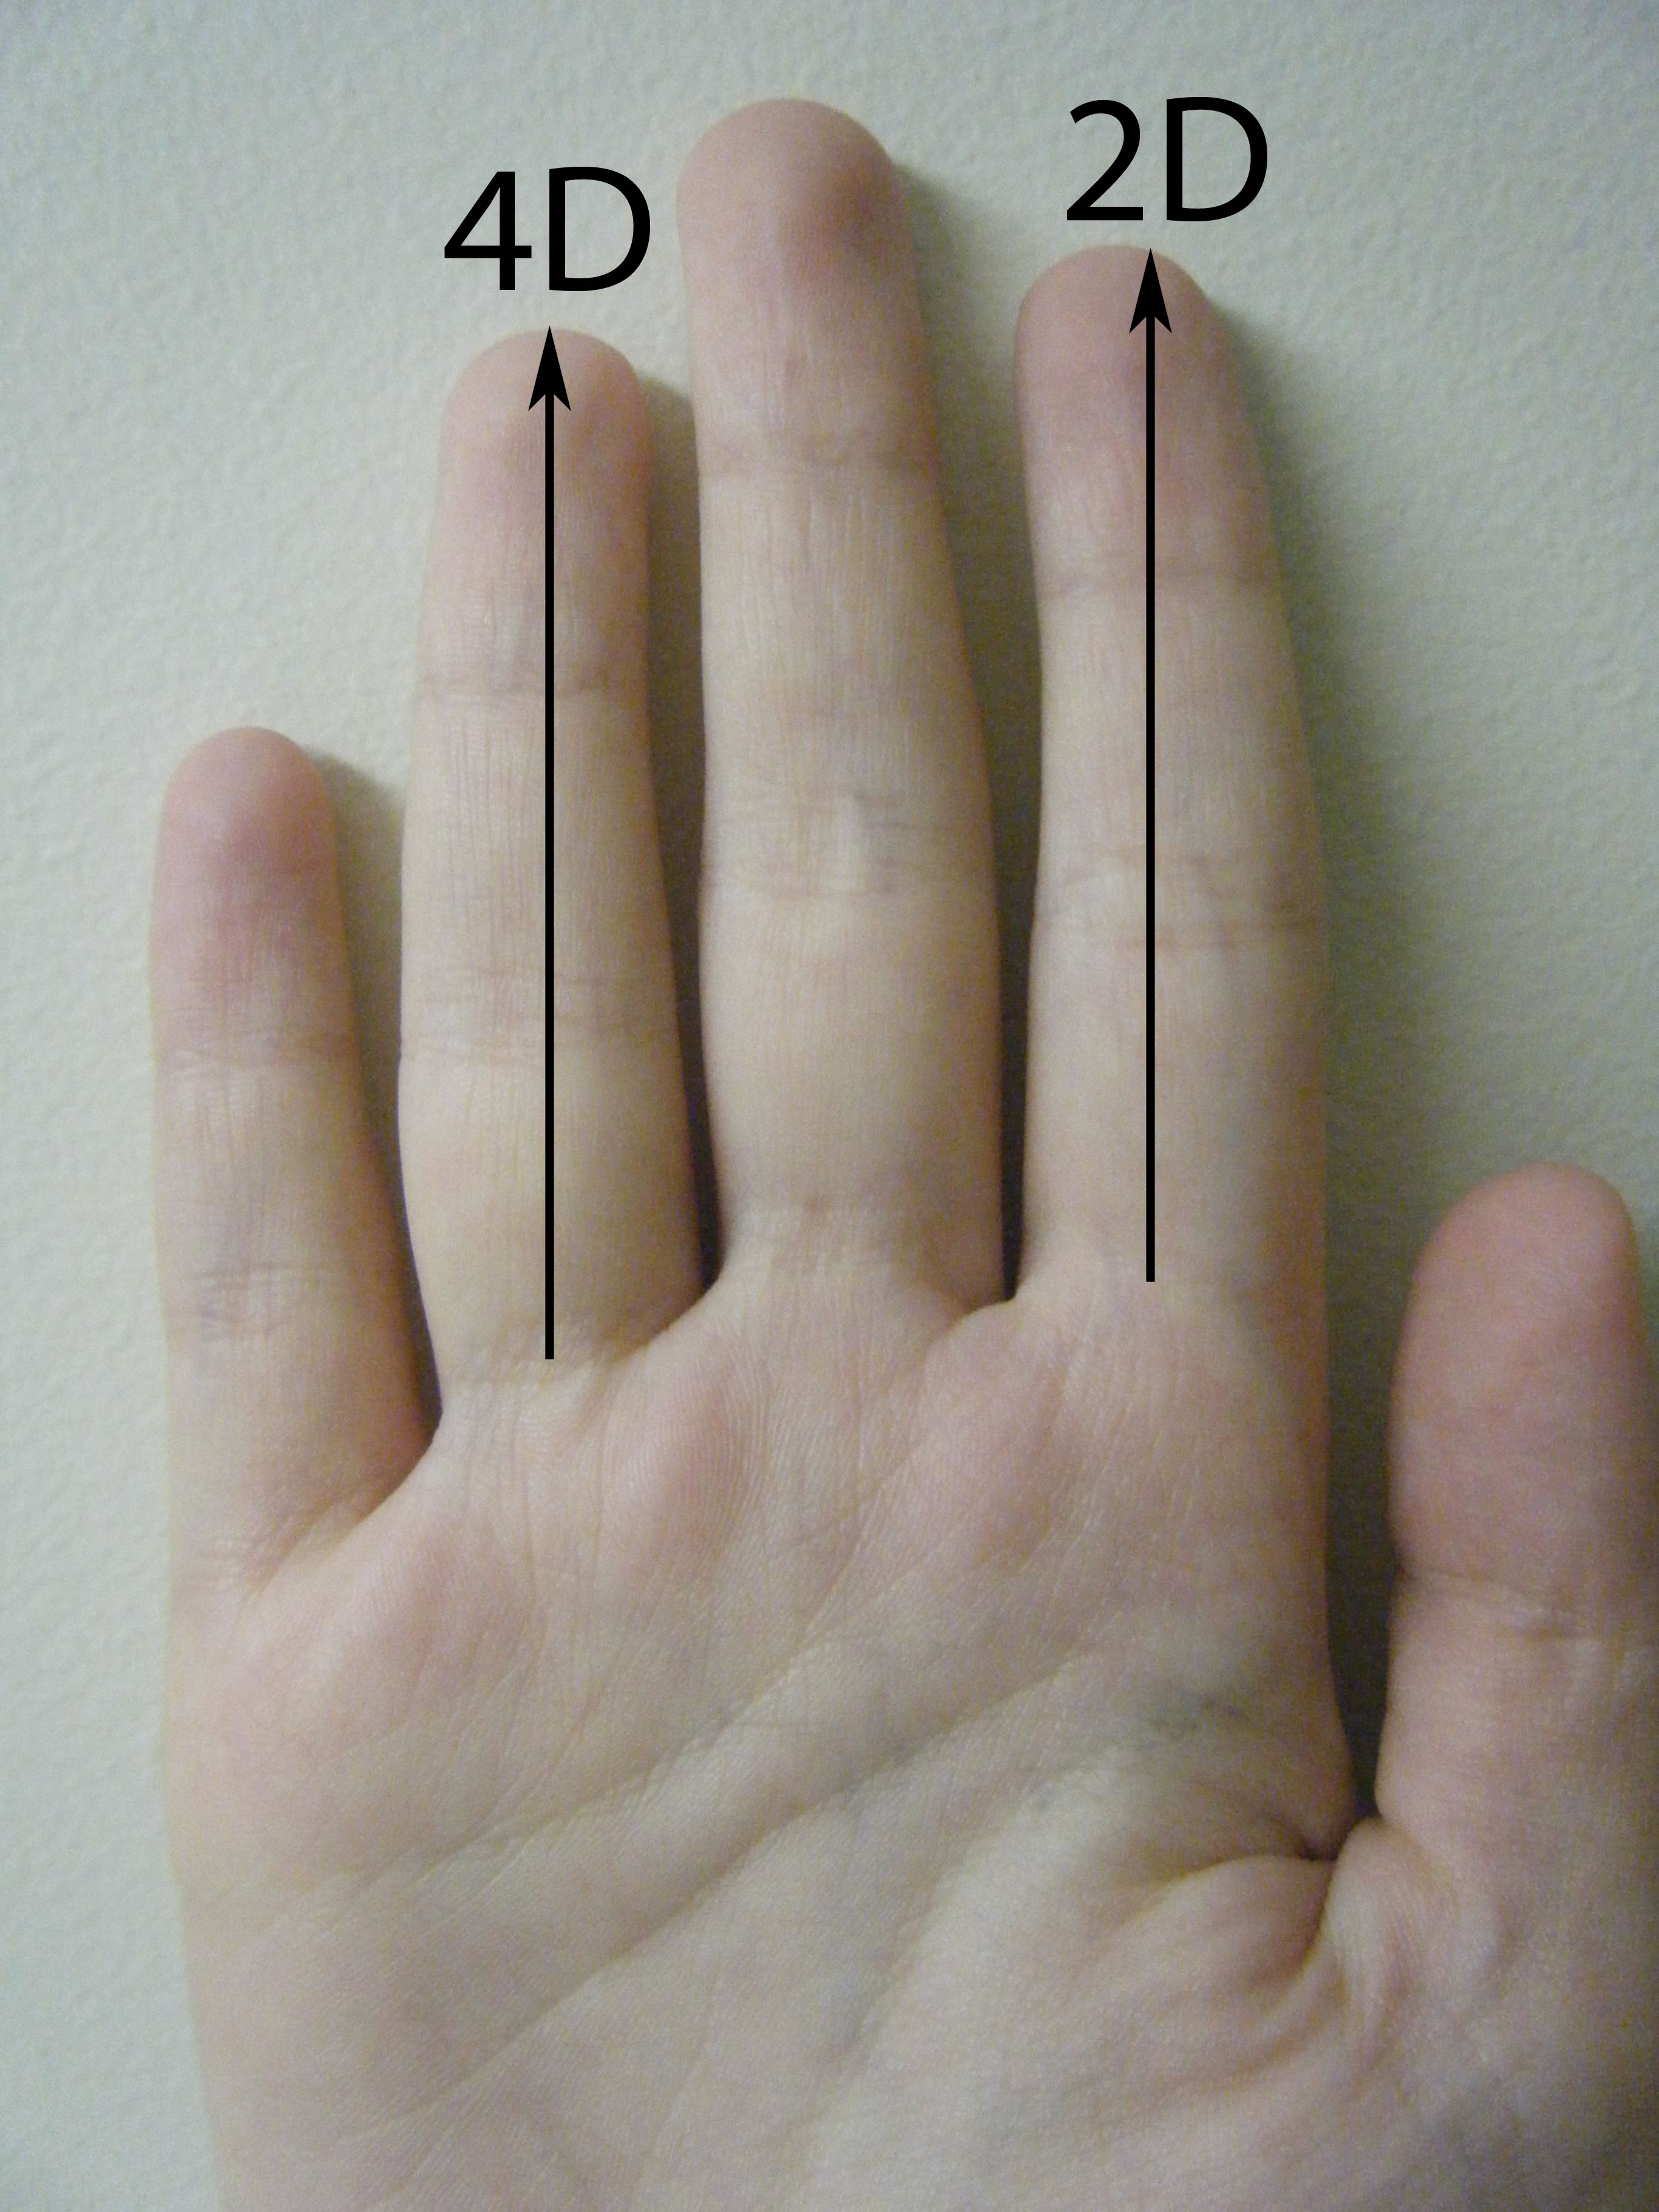 Короткие пальцы у мужчины